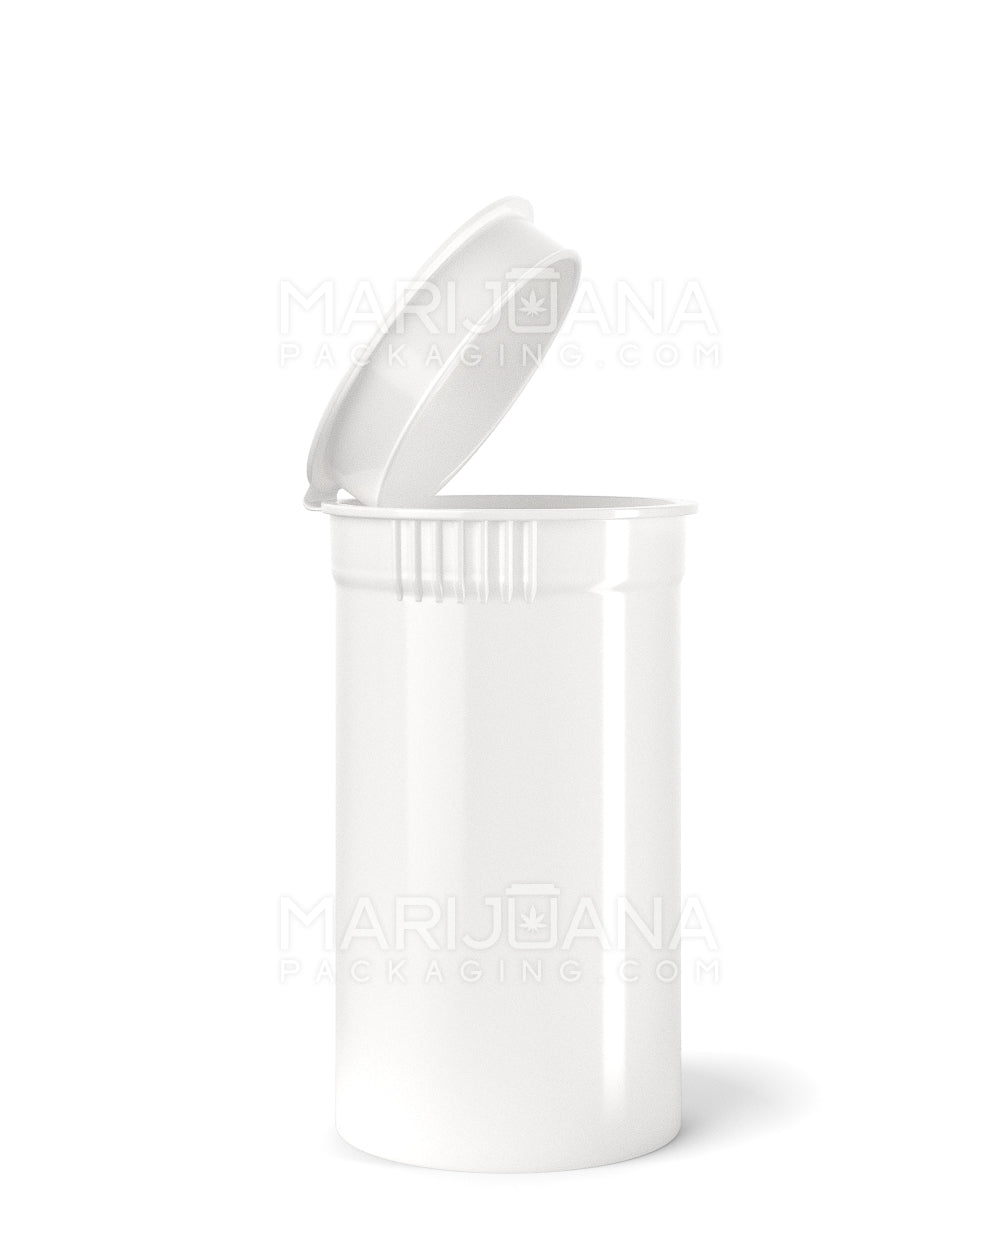 POLLEN GEAR | Child Resistant KSC Opaque White Pop Top Bottles | 19dr - 3.5g - 416 Count - 1